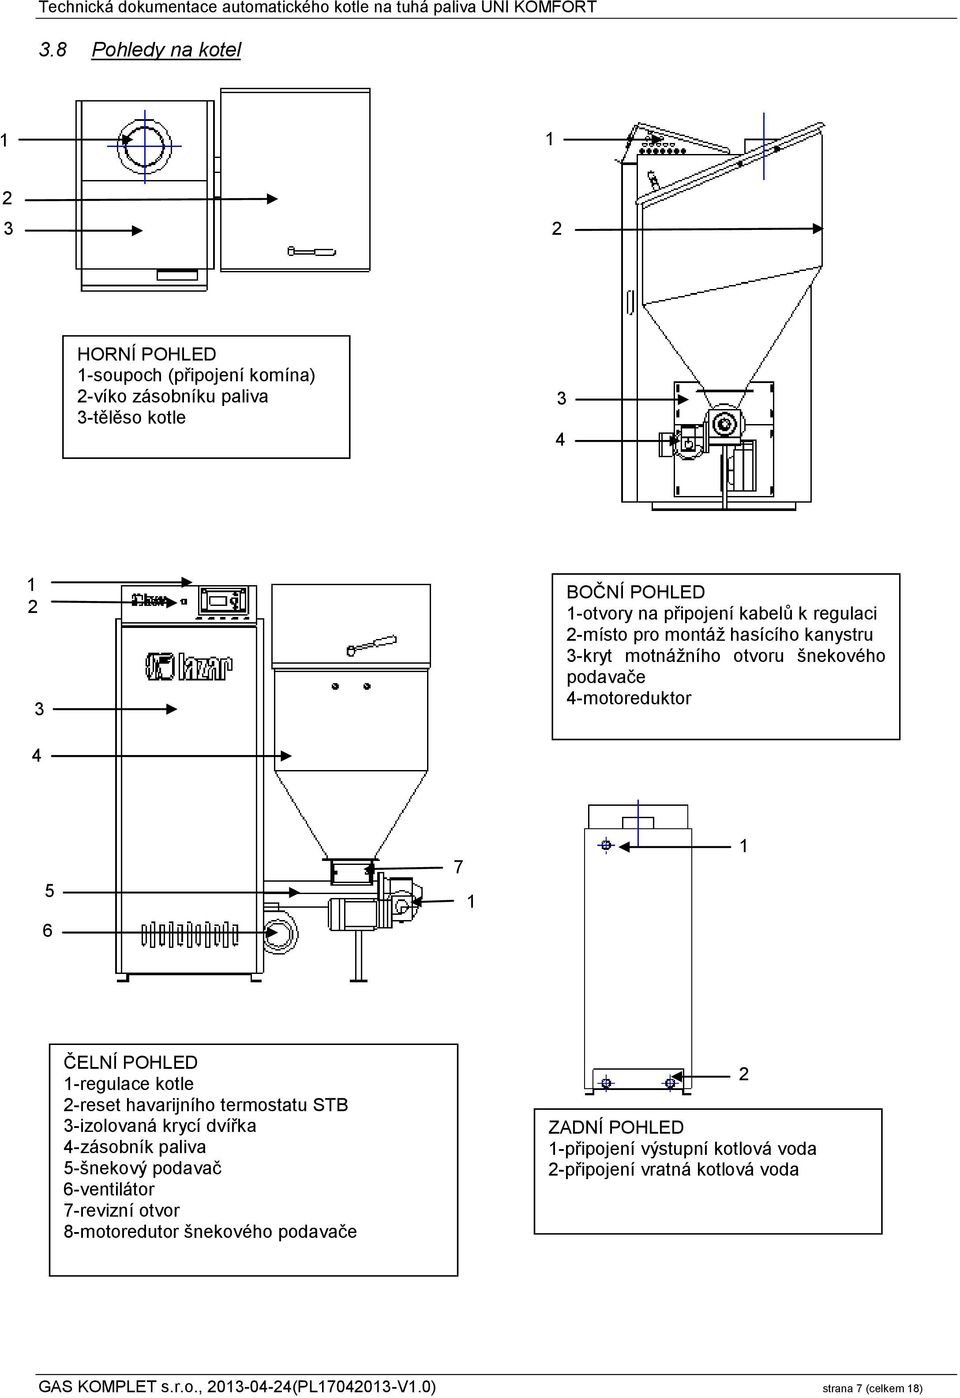 1-regulace kotle 2-reset havarijního termostatu STB 3-izolovaná krycí dvířka 4-zásobník paliva 5-šnekový podavač 6-ventilátor 7-revizní otvor